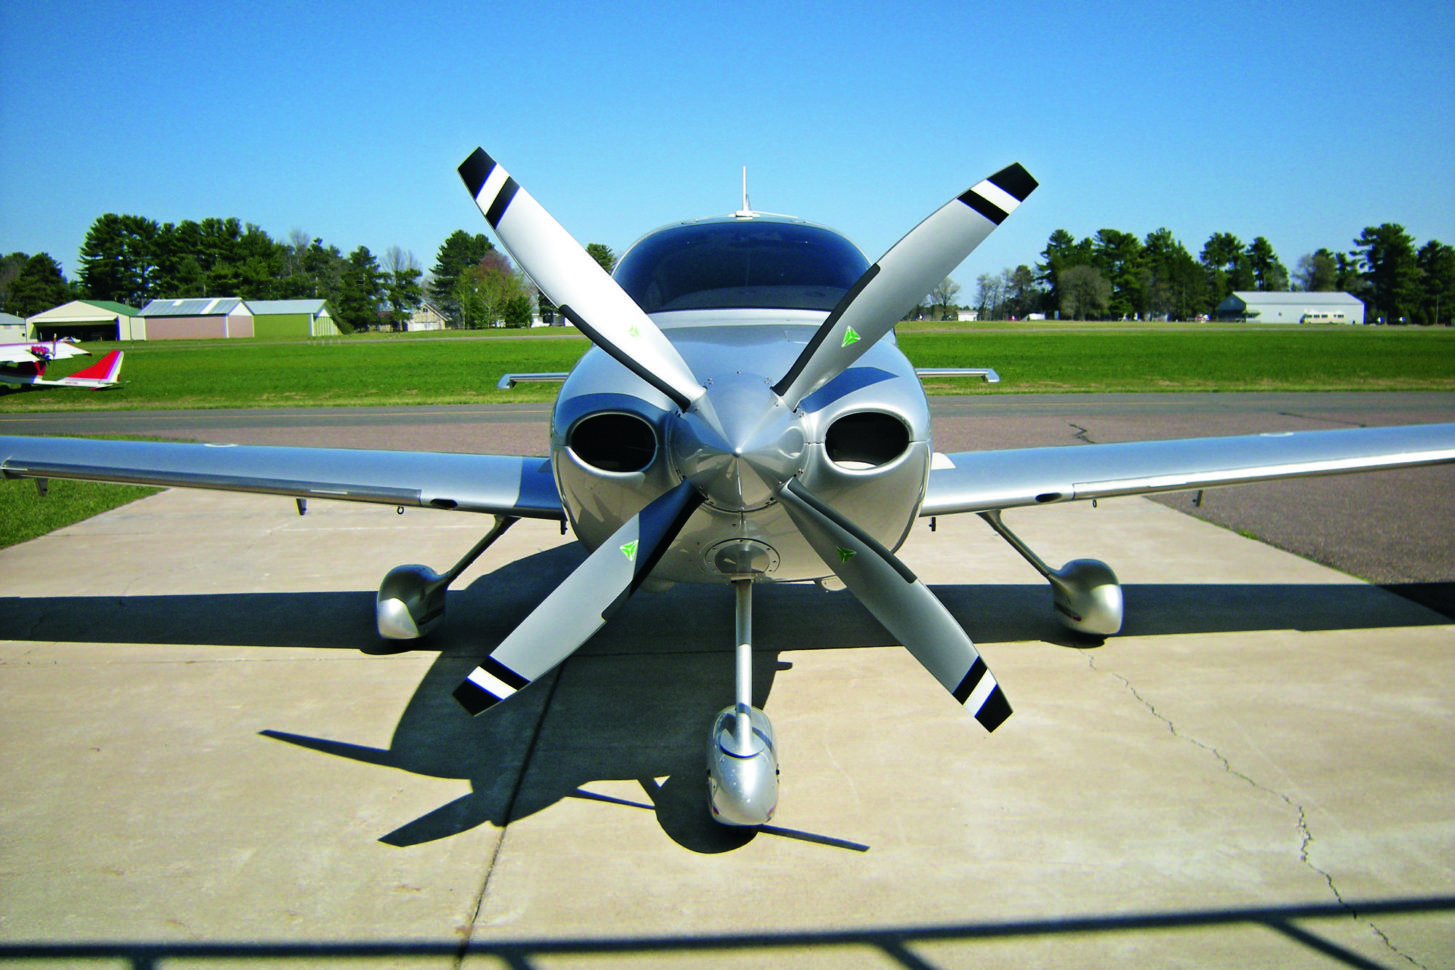 Wie funktioniert ein Flugzeug-Propeller? - fliegermagazin